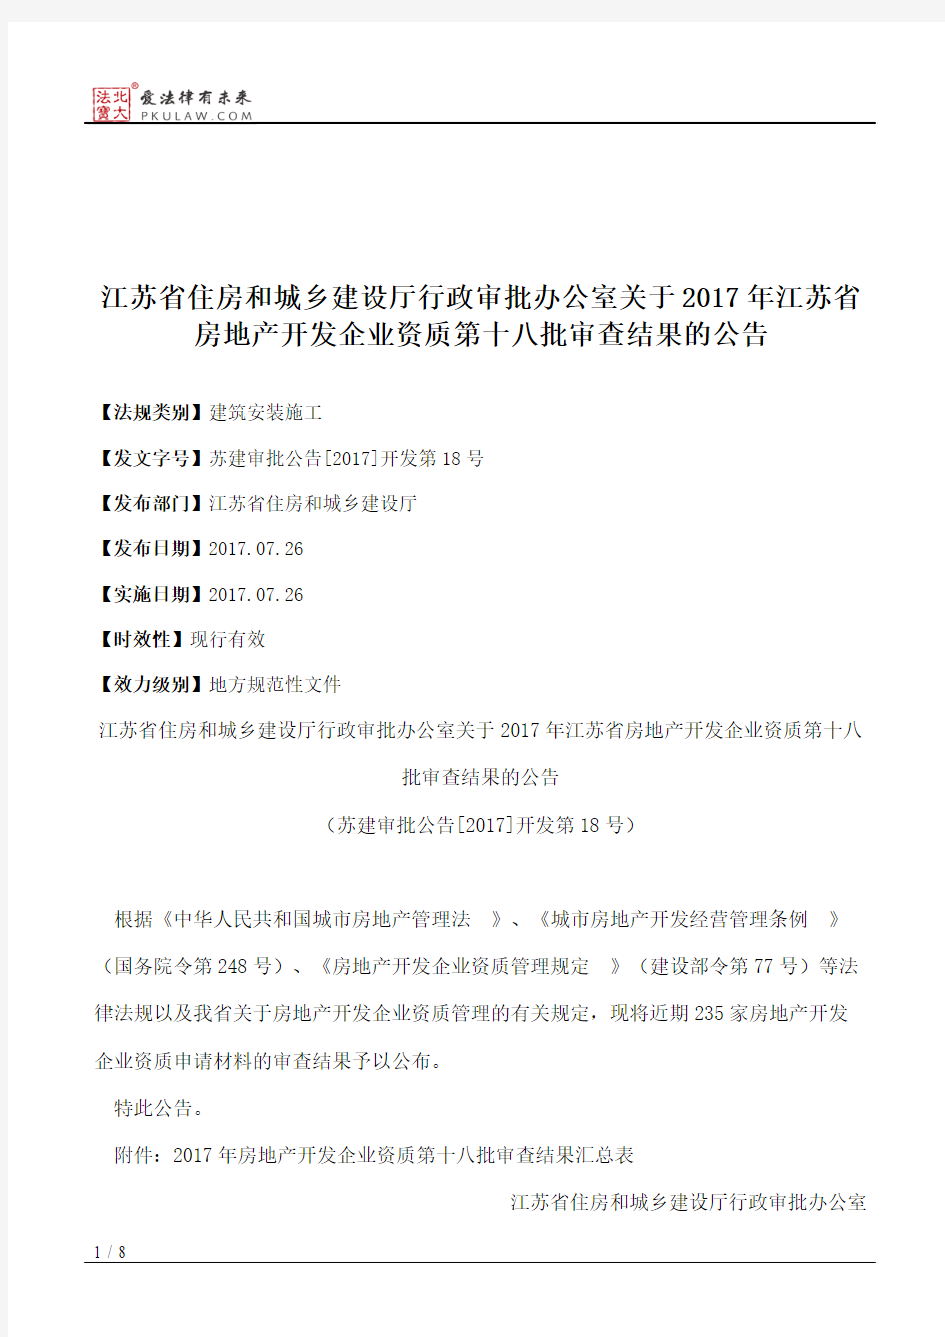 江苏省住房和城乡建设厅行政审批办公室关于2017年江苏省房地产开